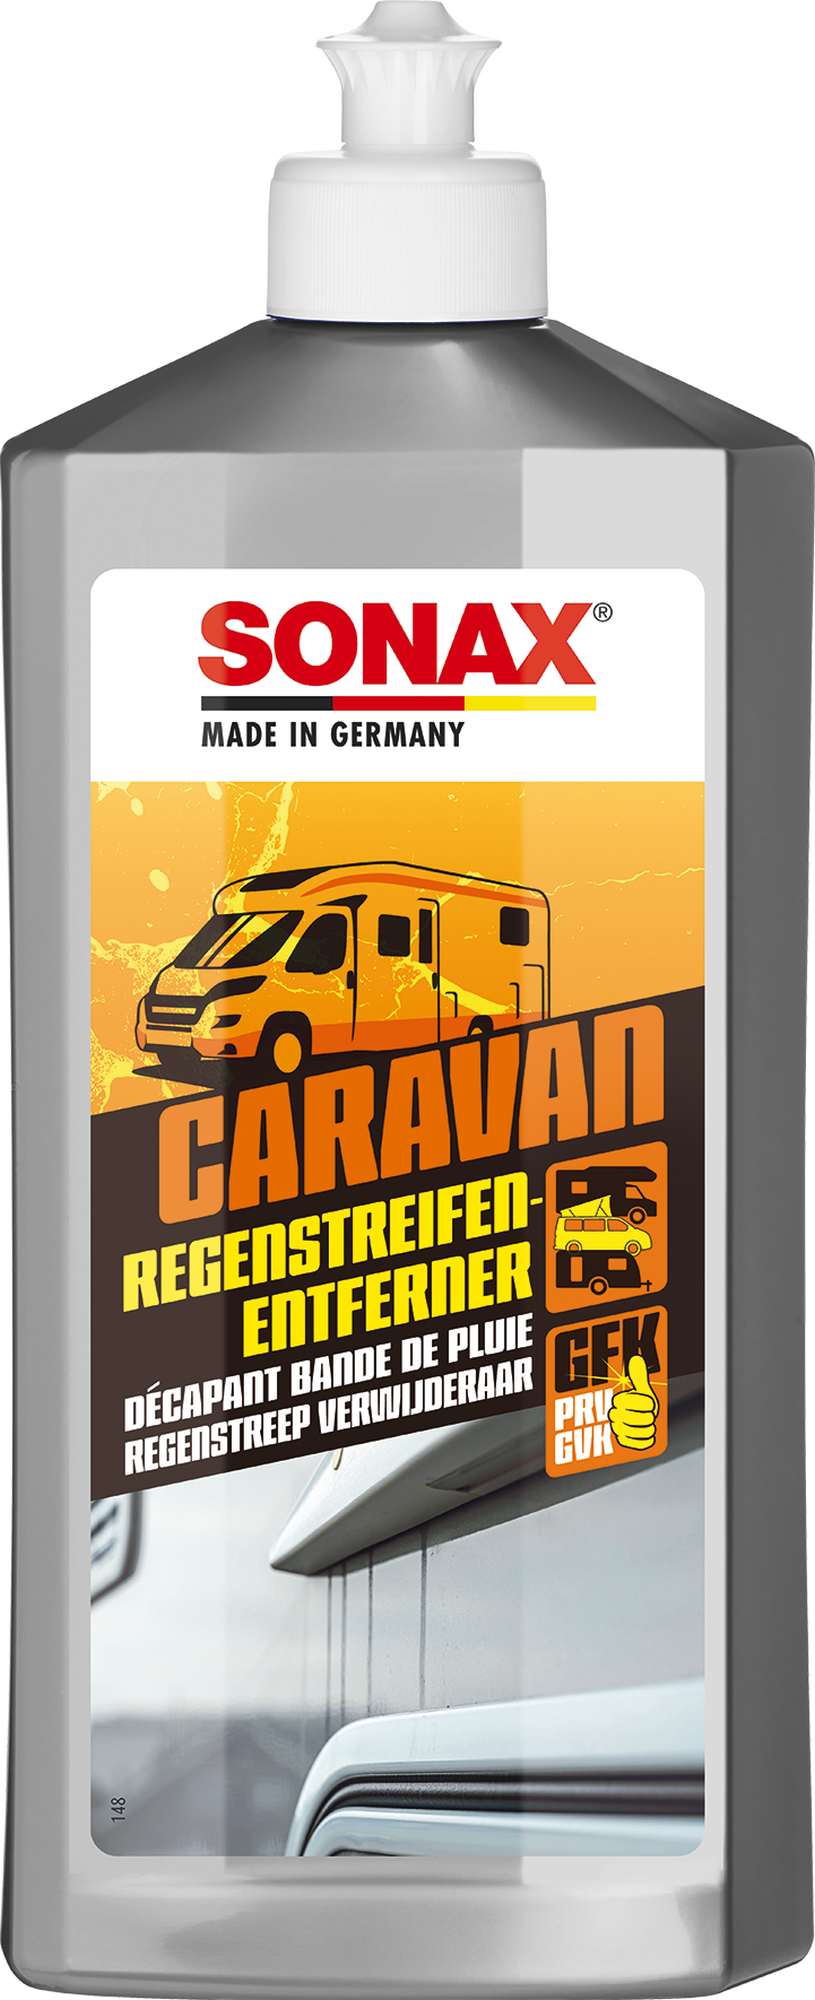 Sonax Caravan Regenstreifenentferner Wohnmobil - Wohnmobilreiniger, 500 ml